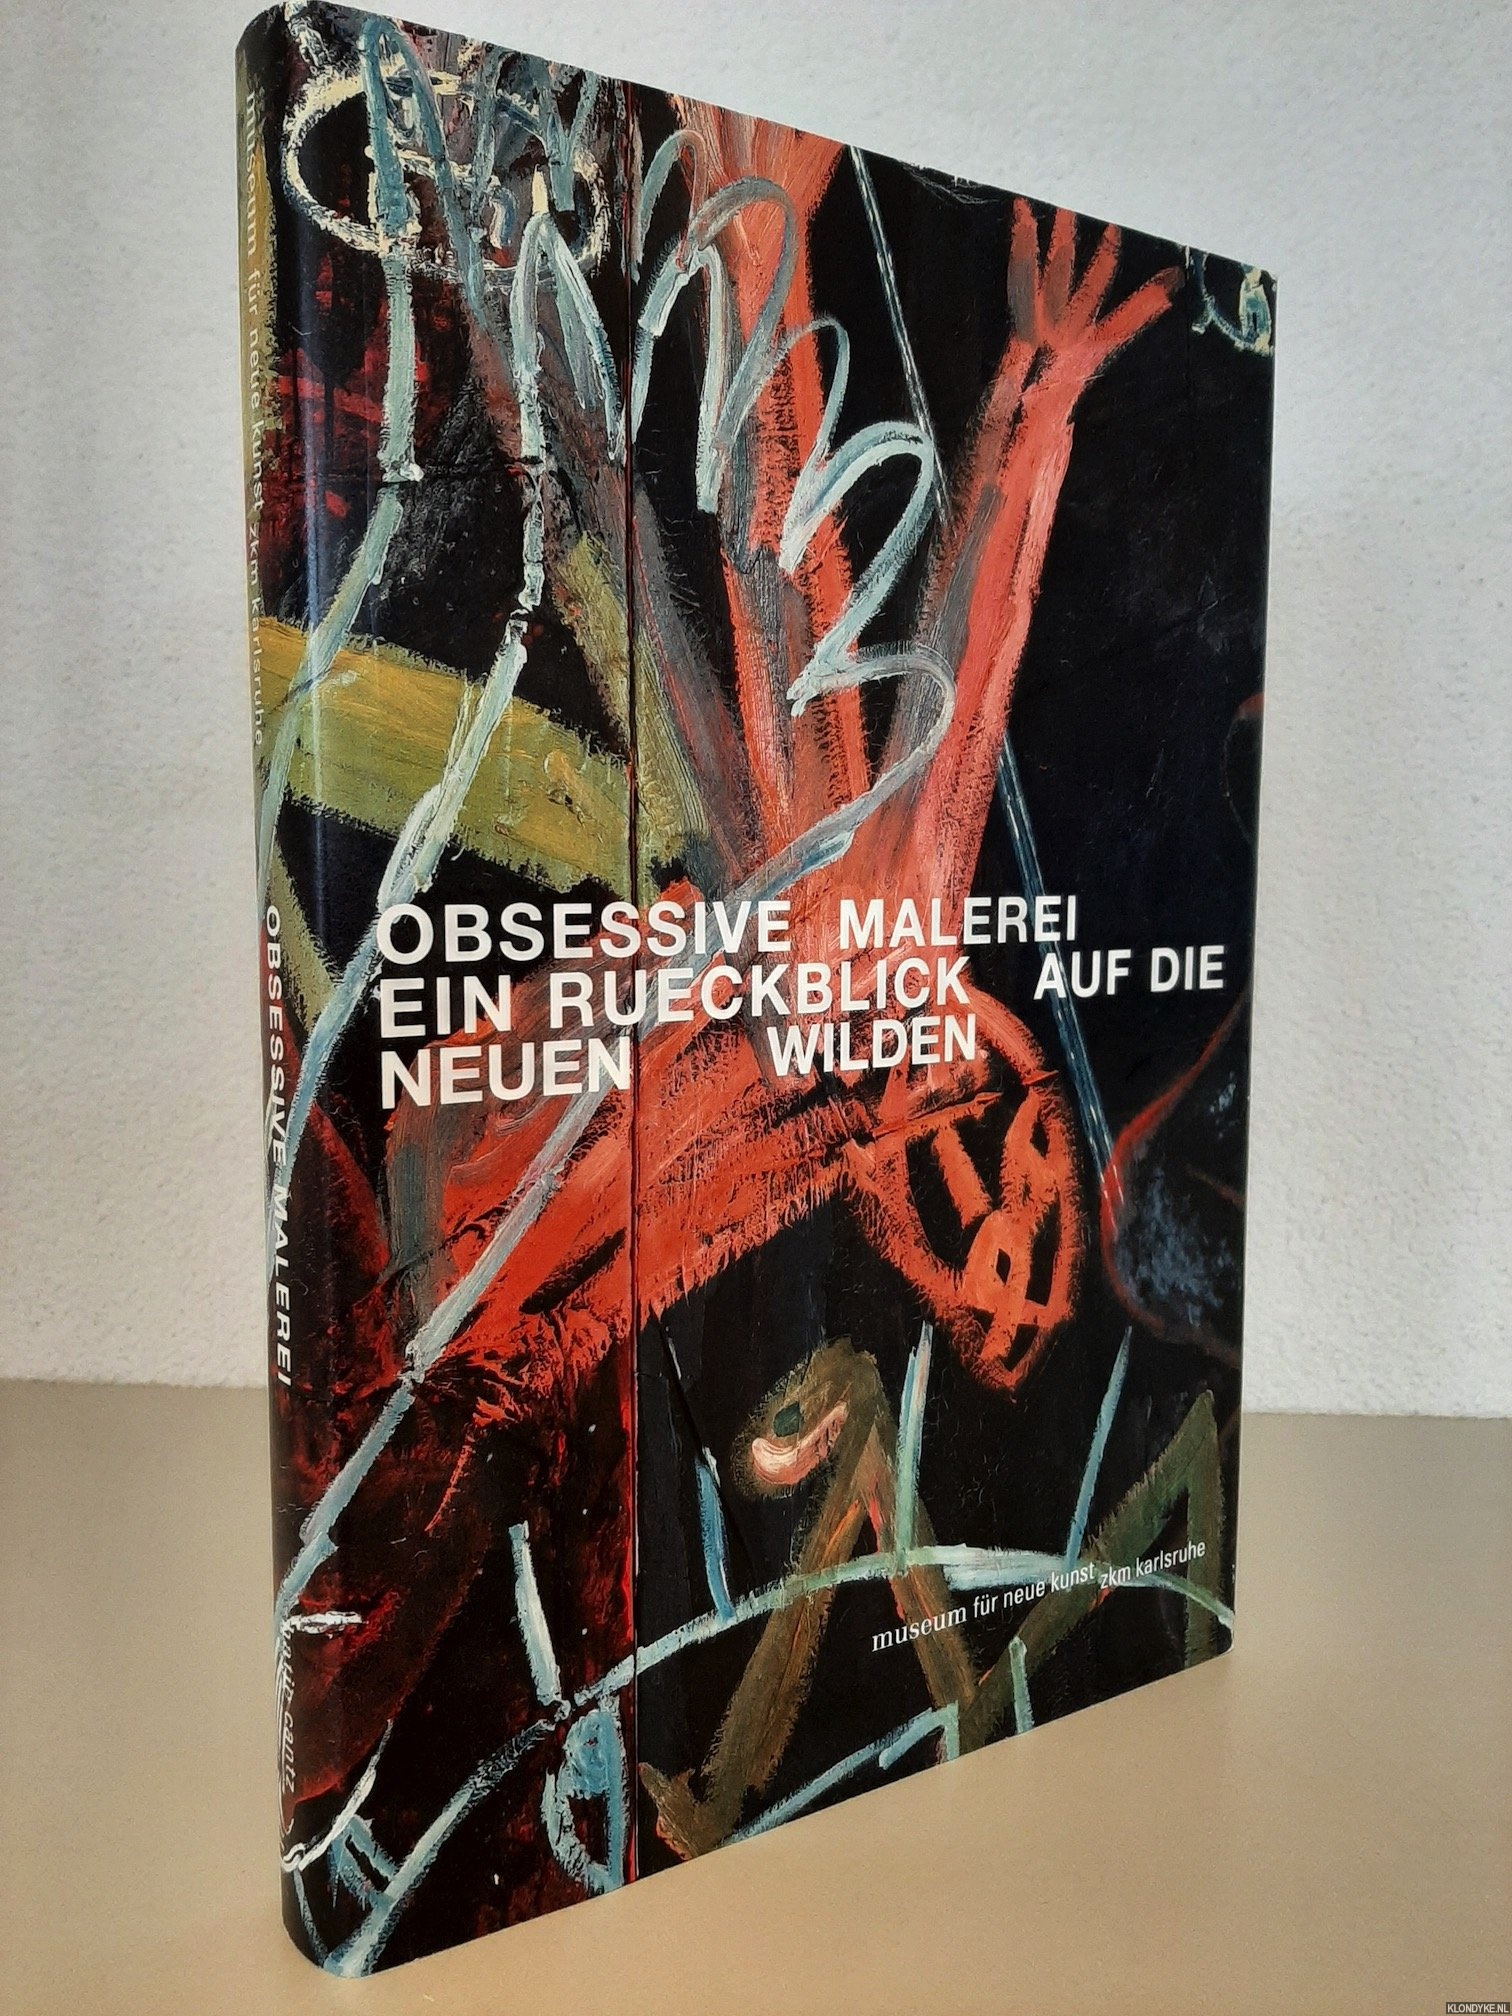 Obsessive Malerei. Ein Rückblick auf die Neuen Wilden - Adriani, Götz & Diedrich Diederichsen - a.o.